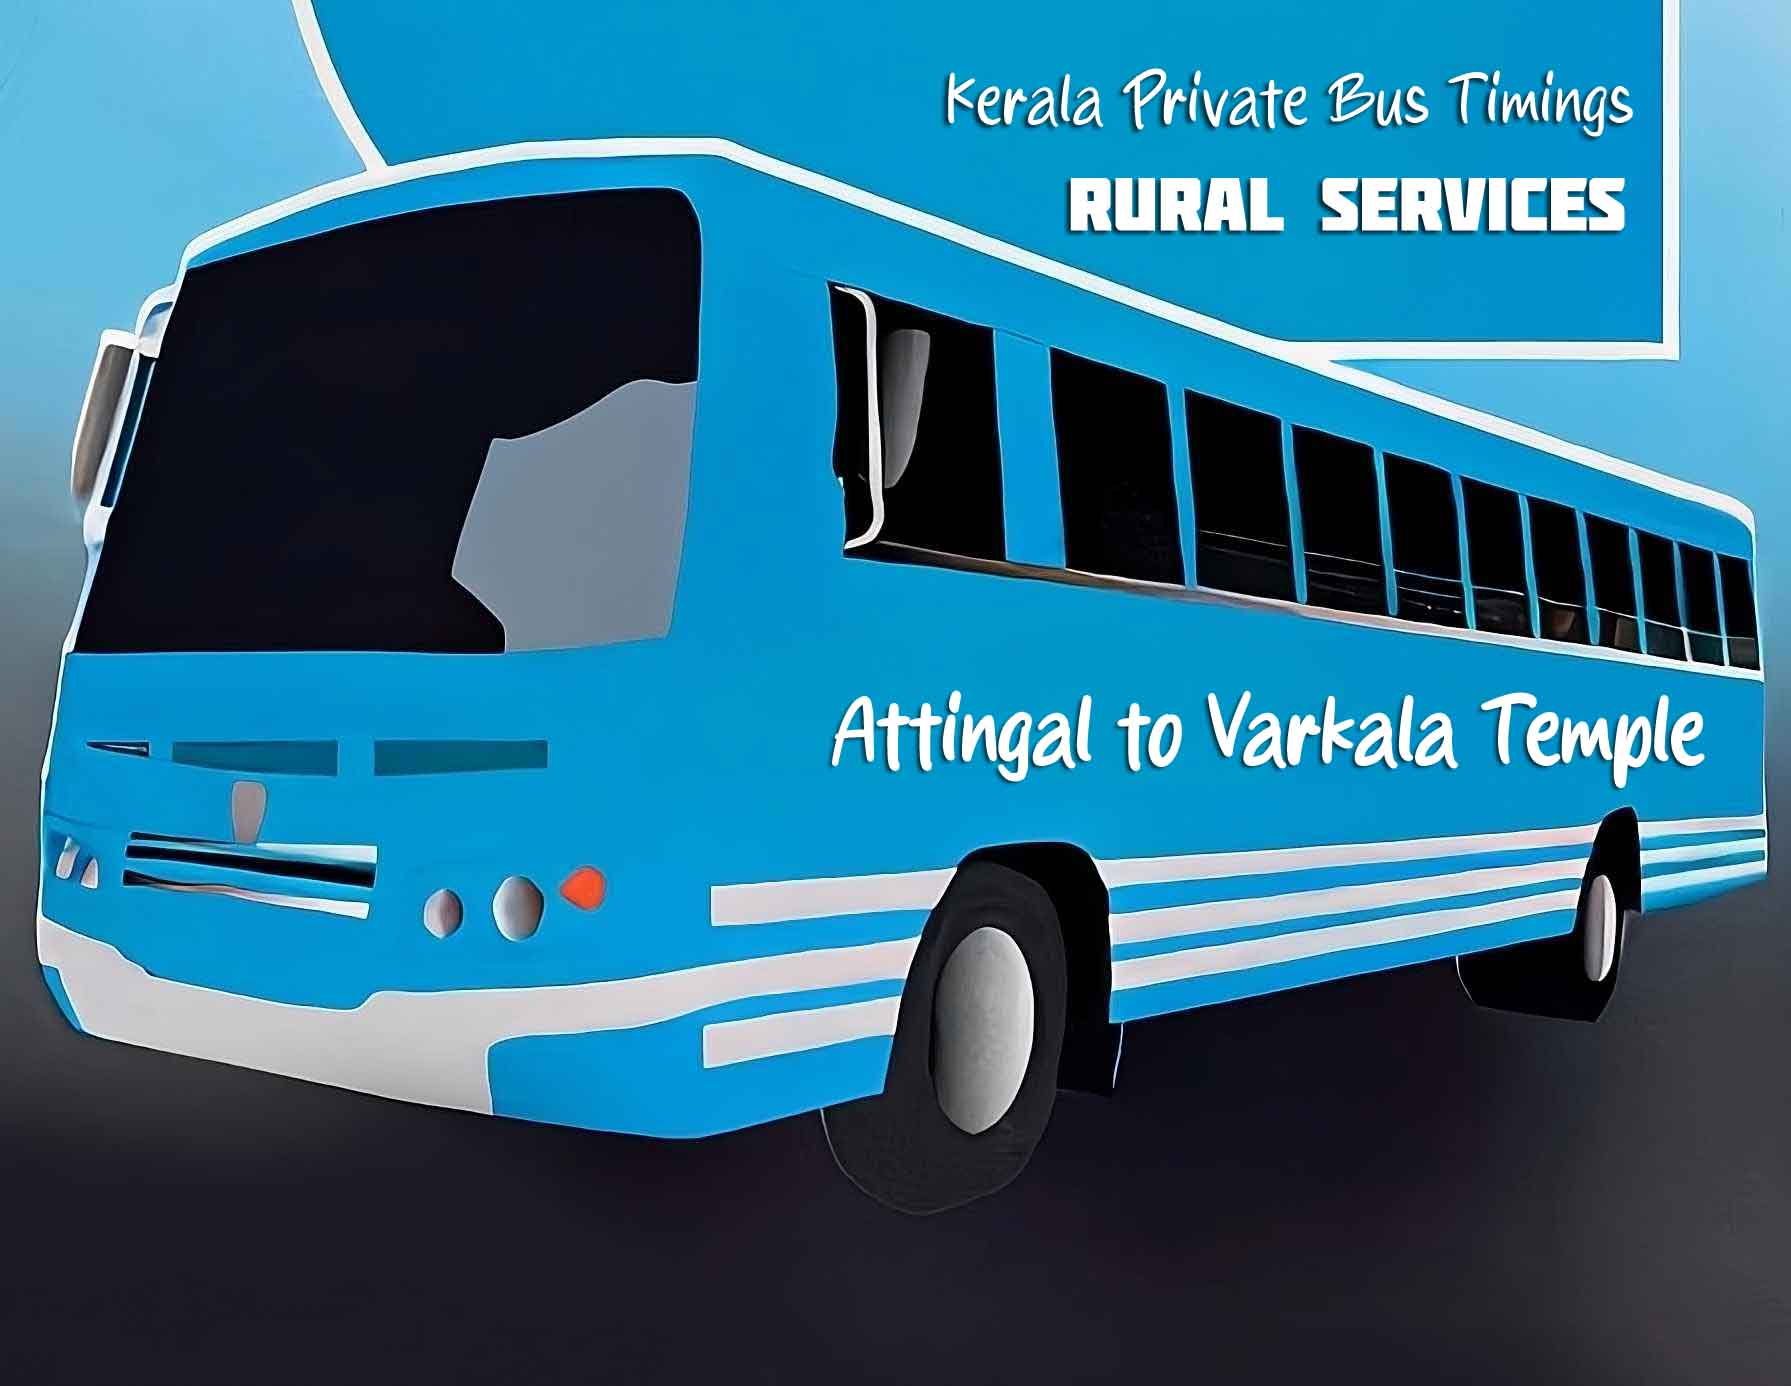 Attingal to Varkala Temple Bus Timings